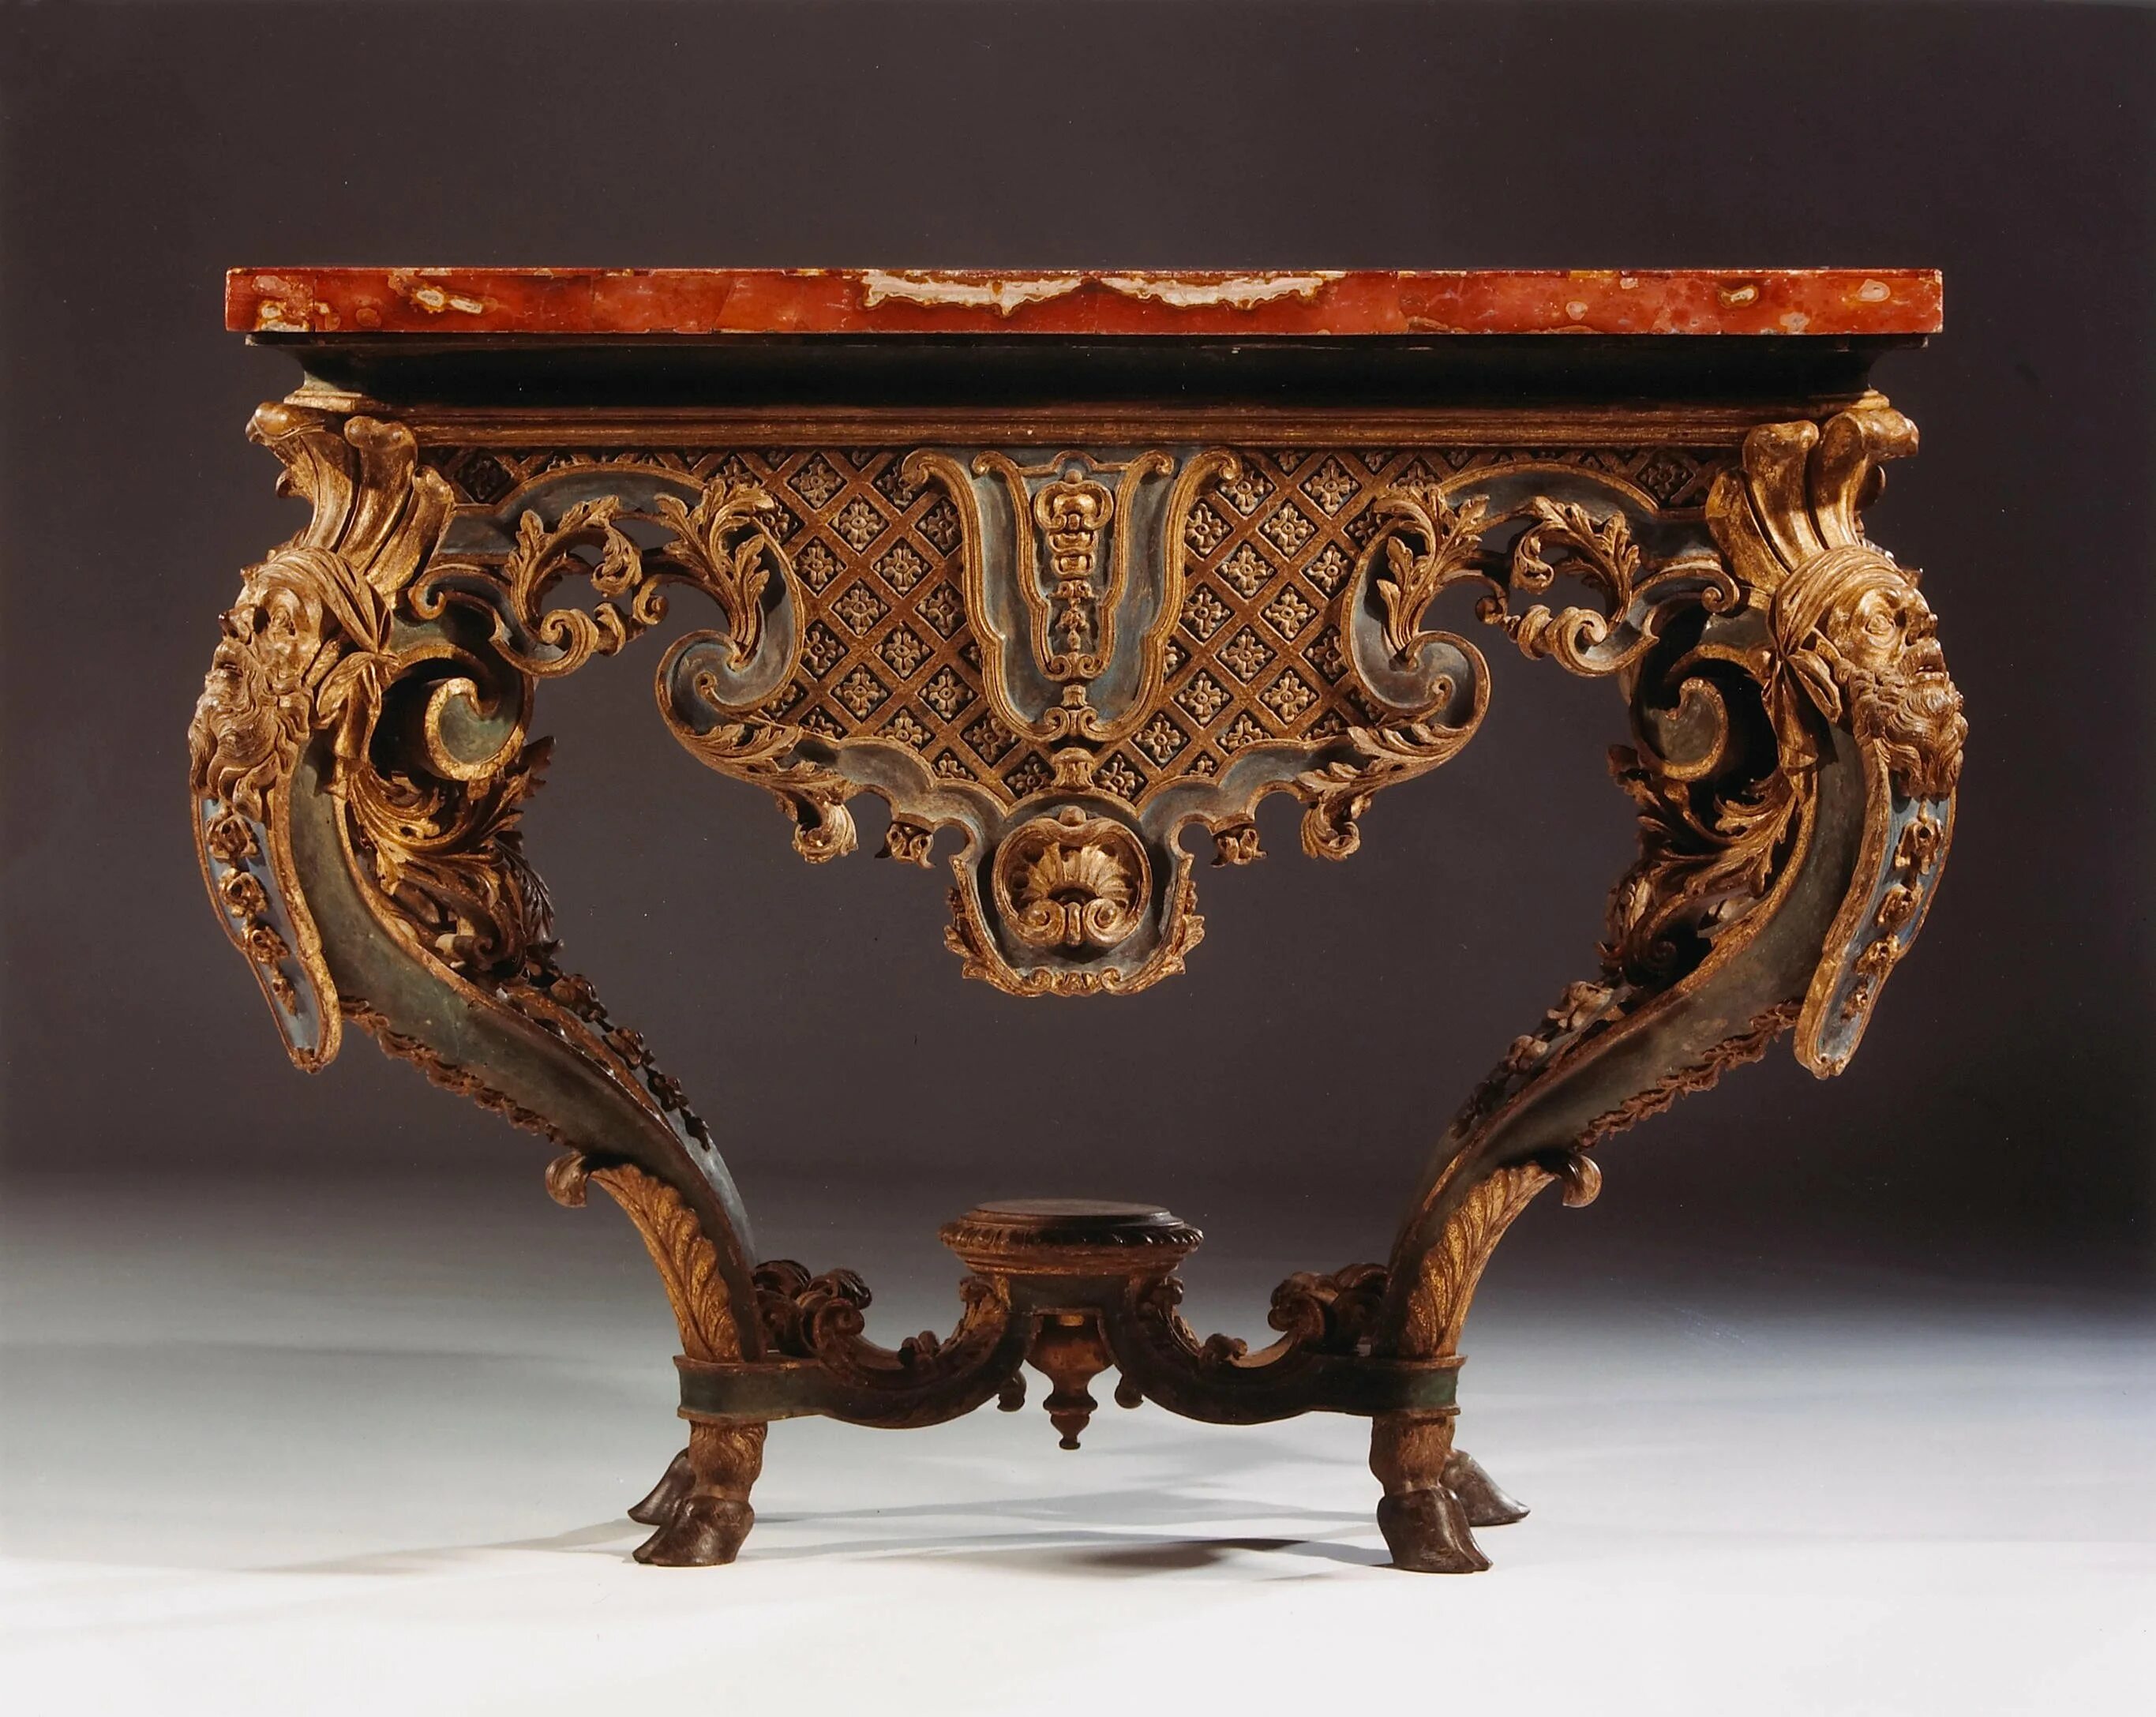 Мебель 17 века. Мебель эпохи Барокко в Италии 17 век. Мебель стиль Барокко 19 век. Консоль 17 век рококо Барокко. Мебель в стиле Барокко 17 век.